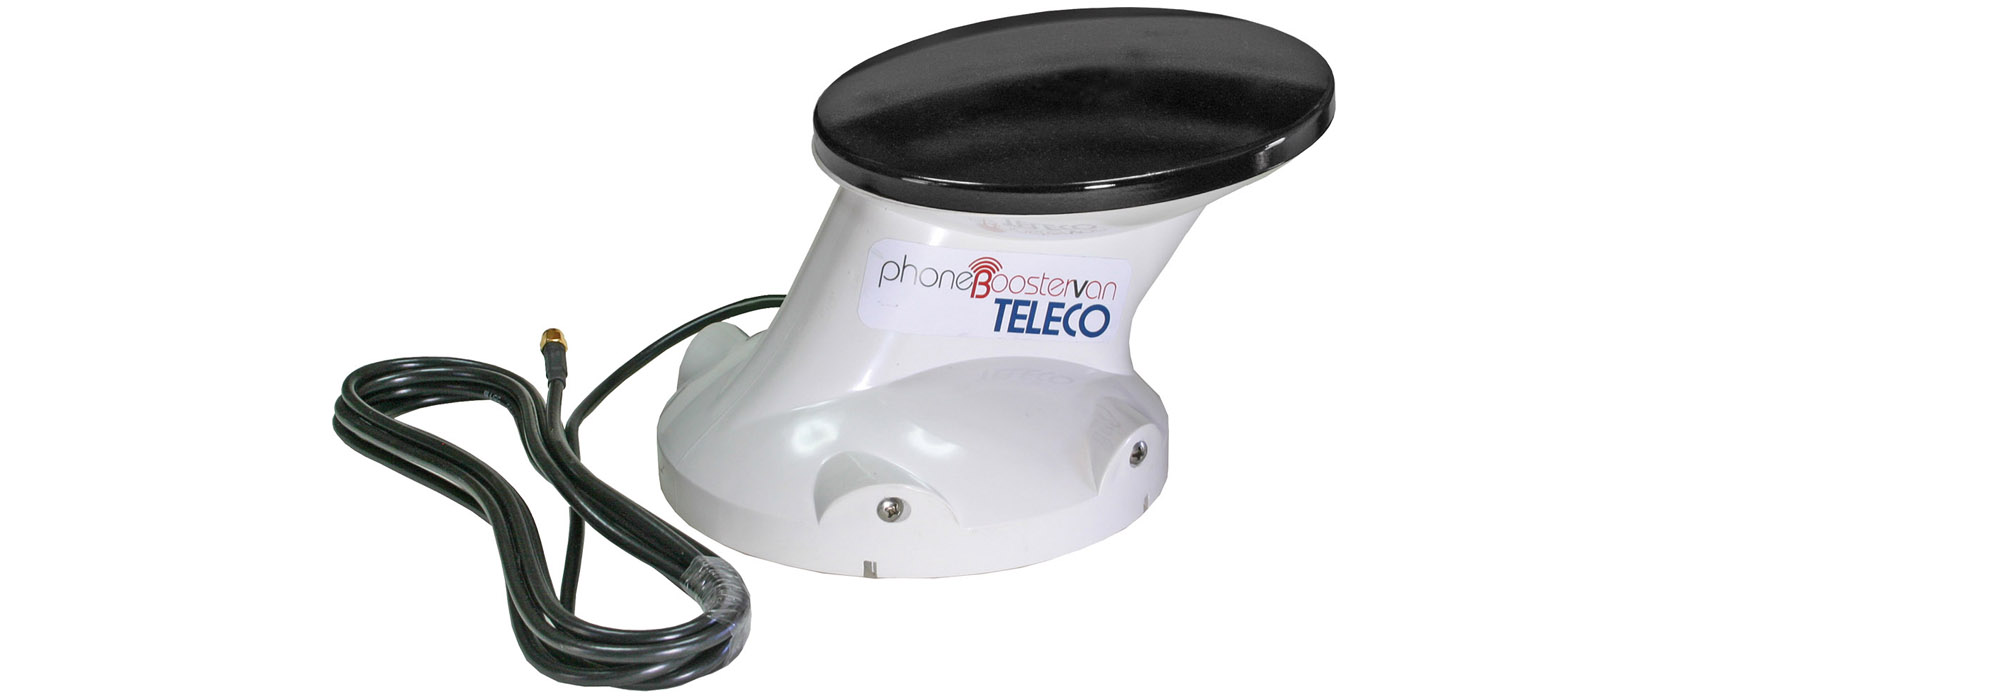 TELECO PhoneBoosterVan 2.0: betere prestaties met de nieuwe antenne